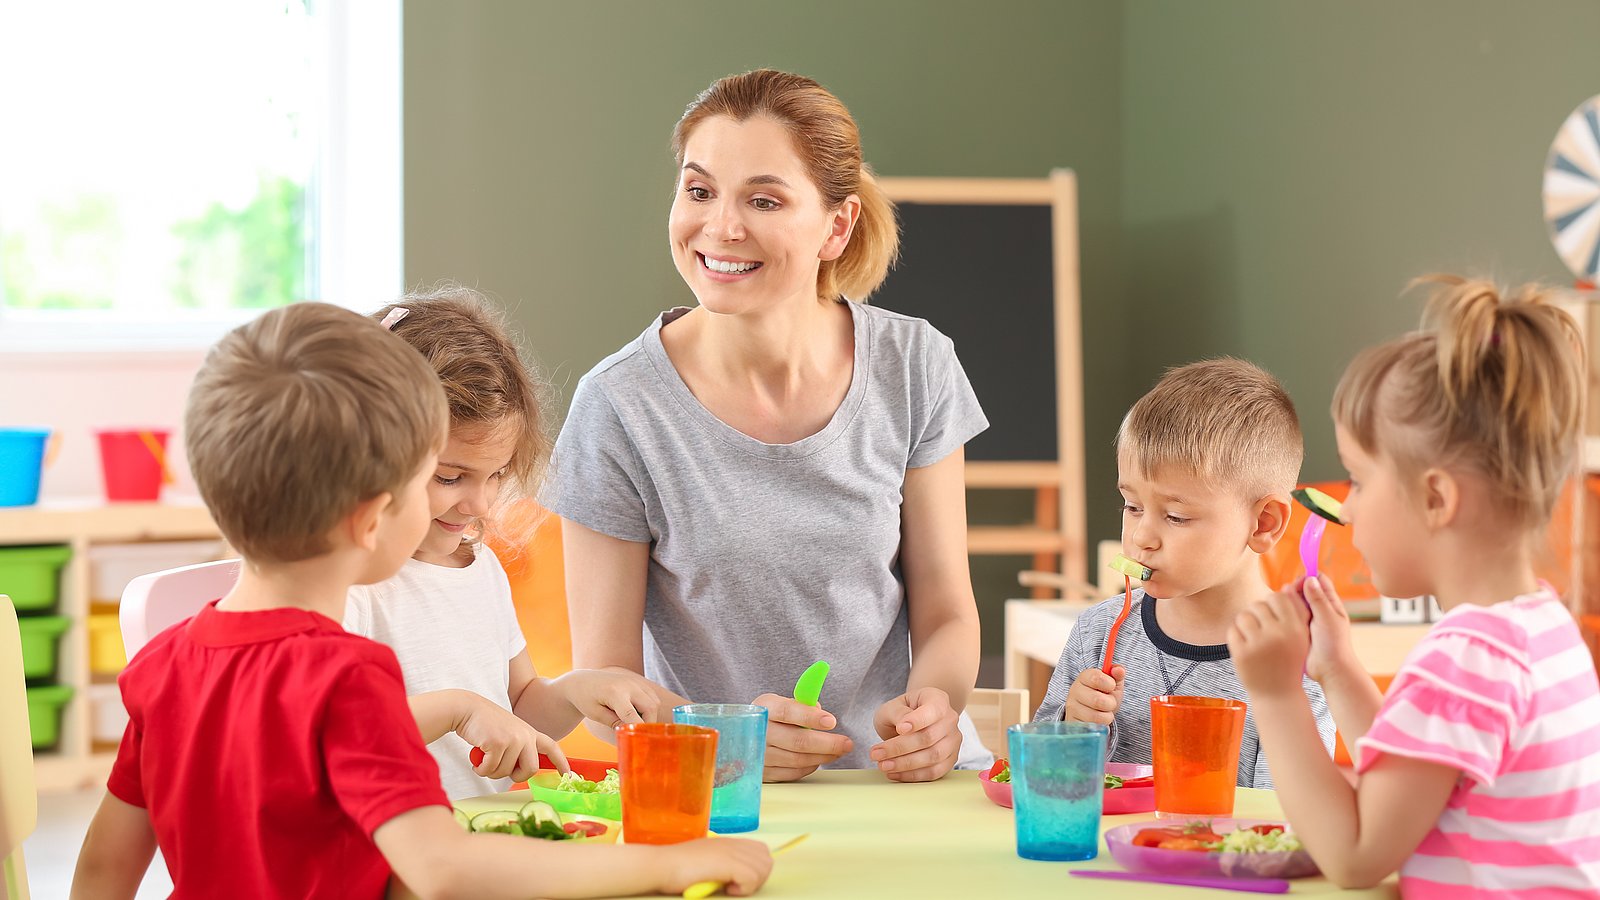 Kinder sitzen um einen Tisch mit buntem Geschirr